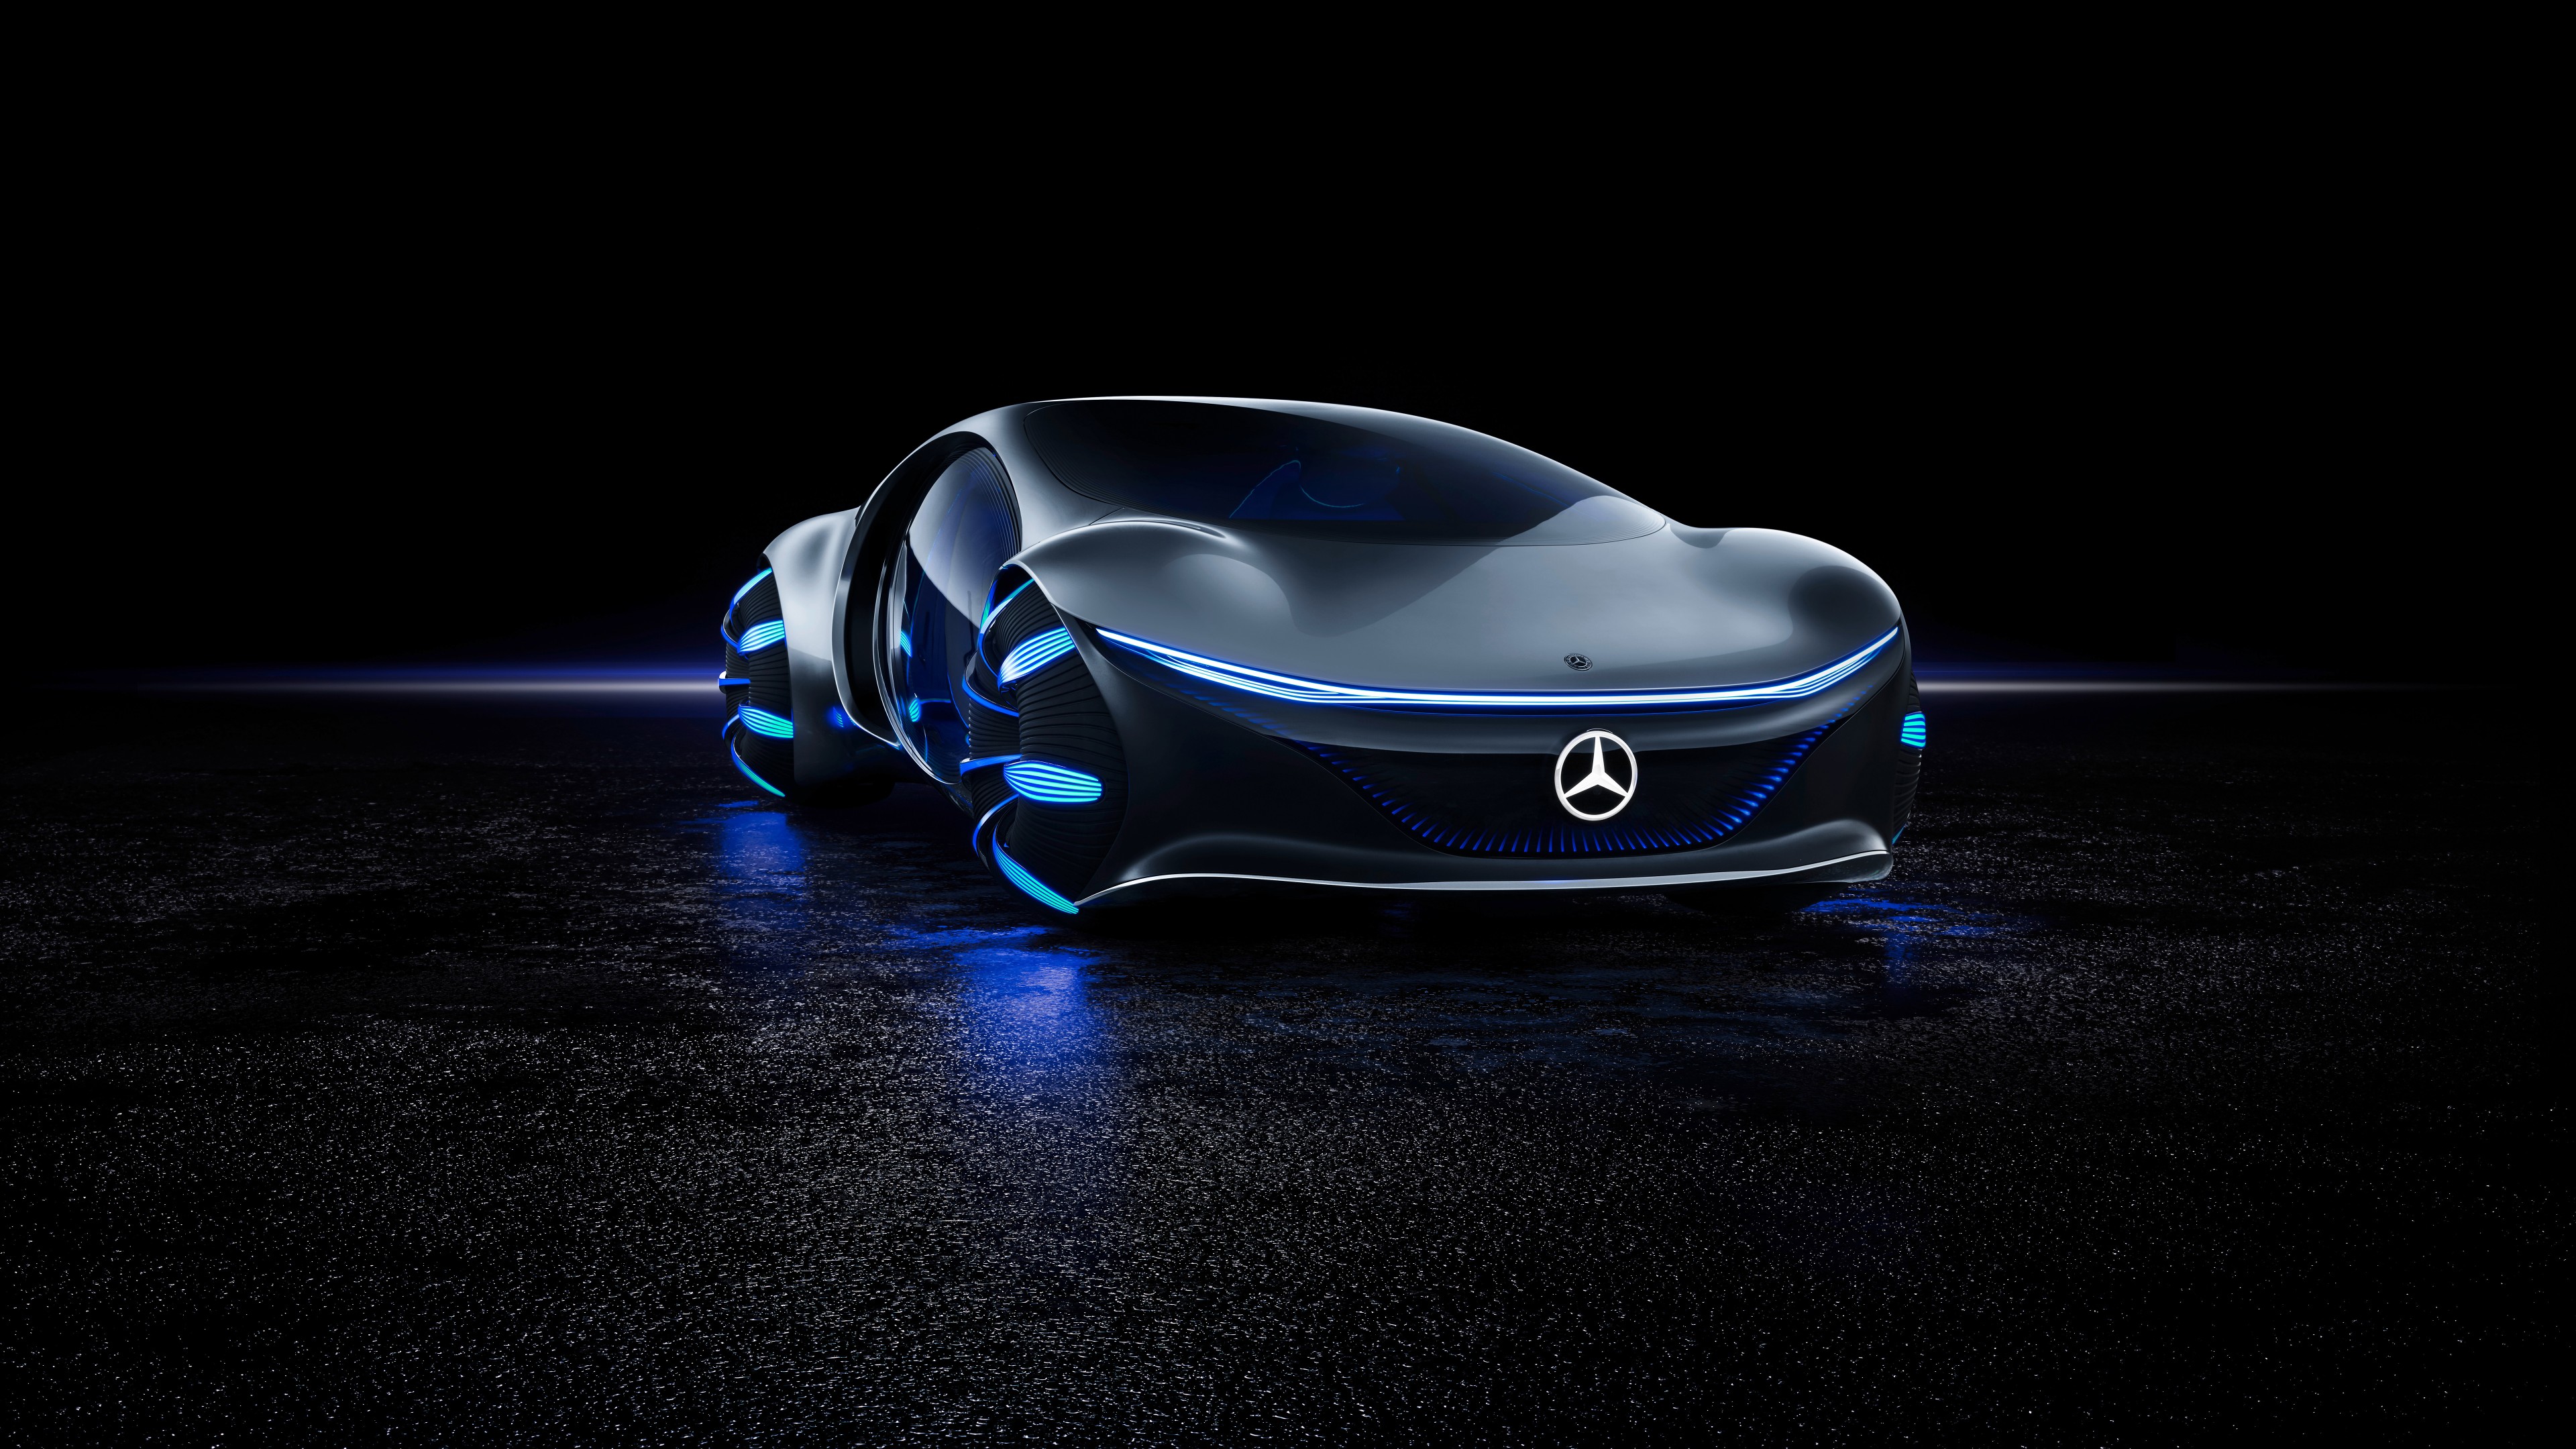 Hình nền Mercedes-Benz sẽ mang đến cho màn hình của bạn vẻ đẹp sang trọng và đẳng cấp mà không một loại hình nền nào có thể sánh được. Với những hình ảnh xe Mercedes-Benz đầy mạnh mẽ và đẳng cấp, bạn sẽ không thể nhịn được việc ngắm nhìn chúng!